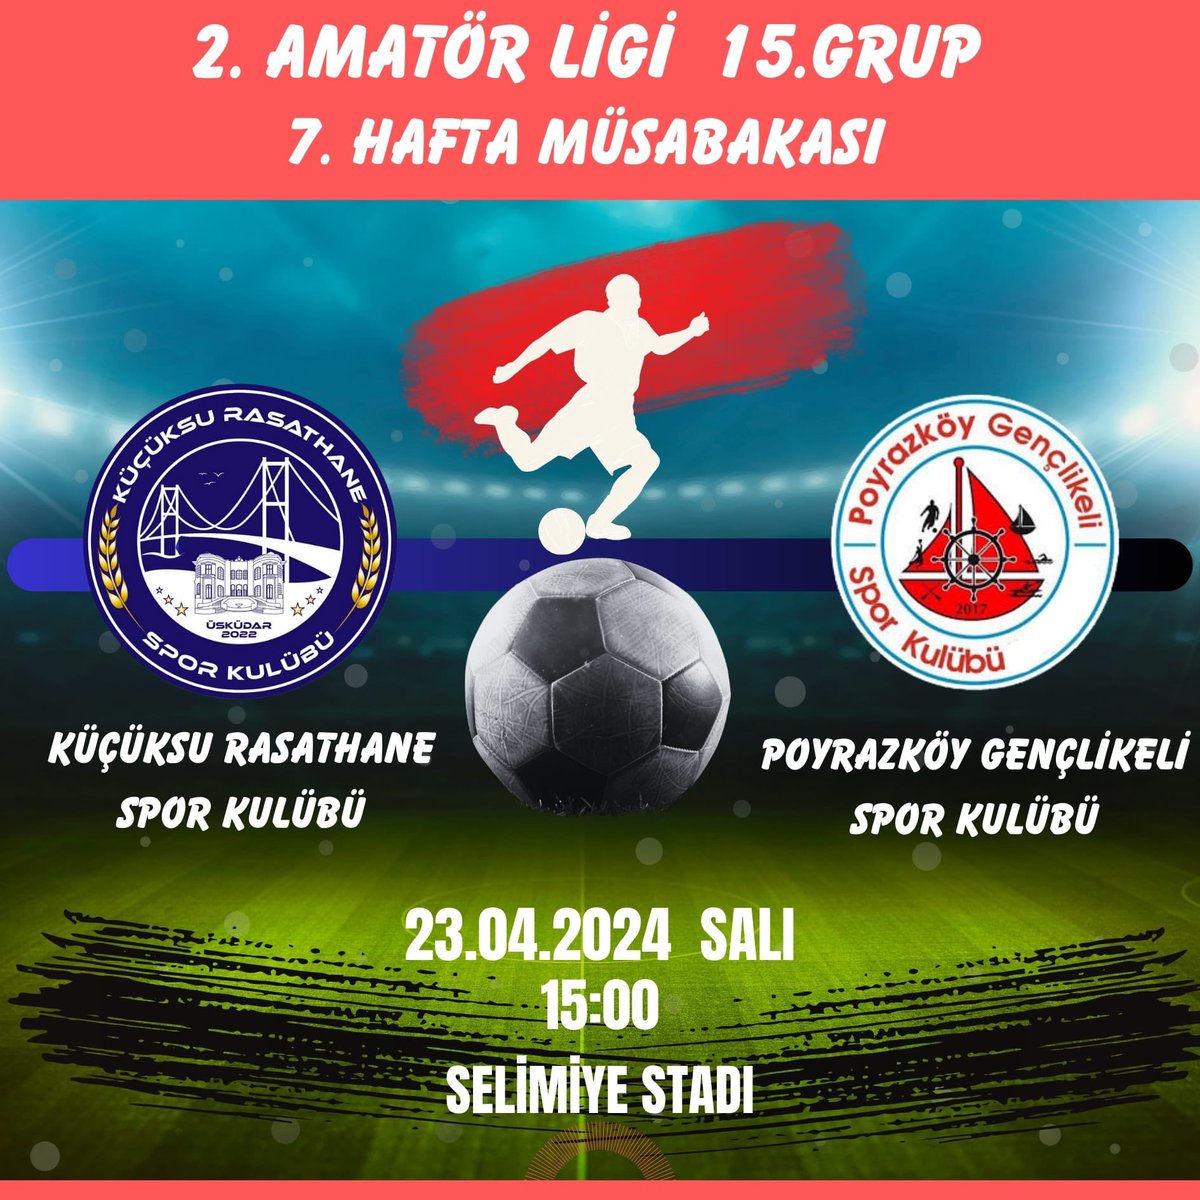 2.Amatör Lig 15.Grup 7.Hafta Müsabakası

🆚 Poyrazköy Gençlikeli Spor
🗓 23 Nisan Salı    
🕖 15:00
🏟 Selimiye Stadı